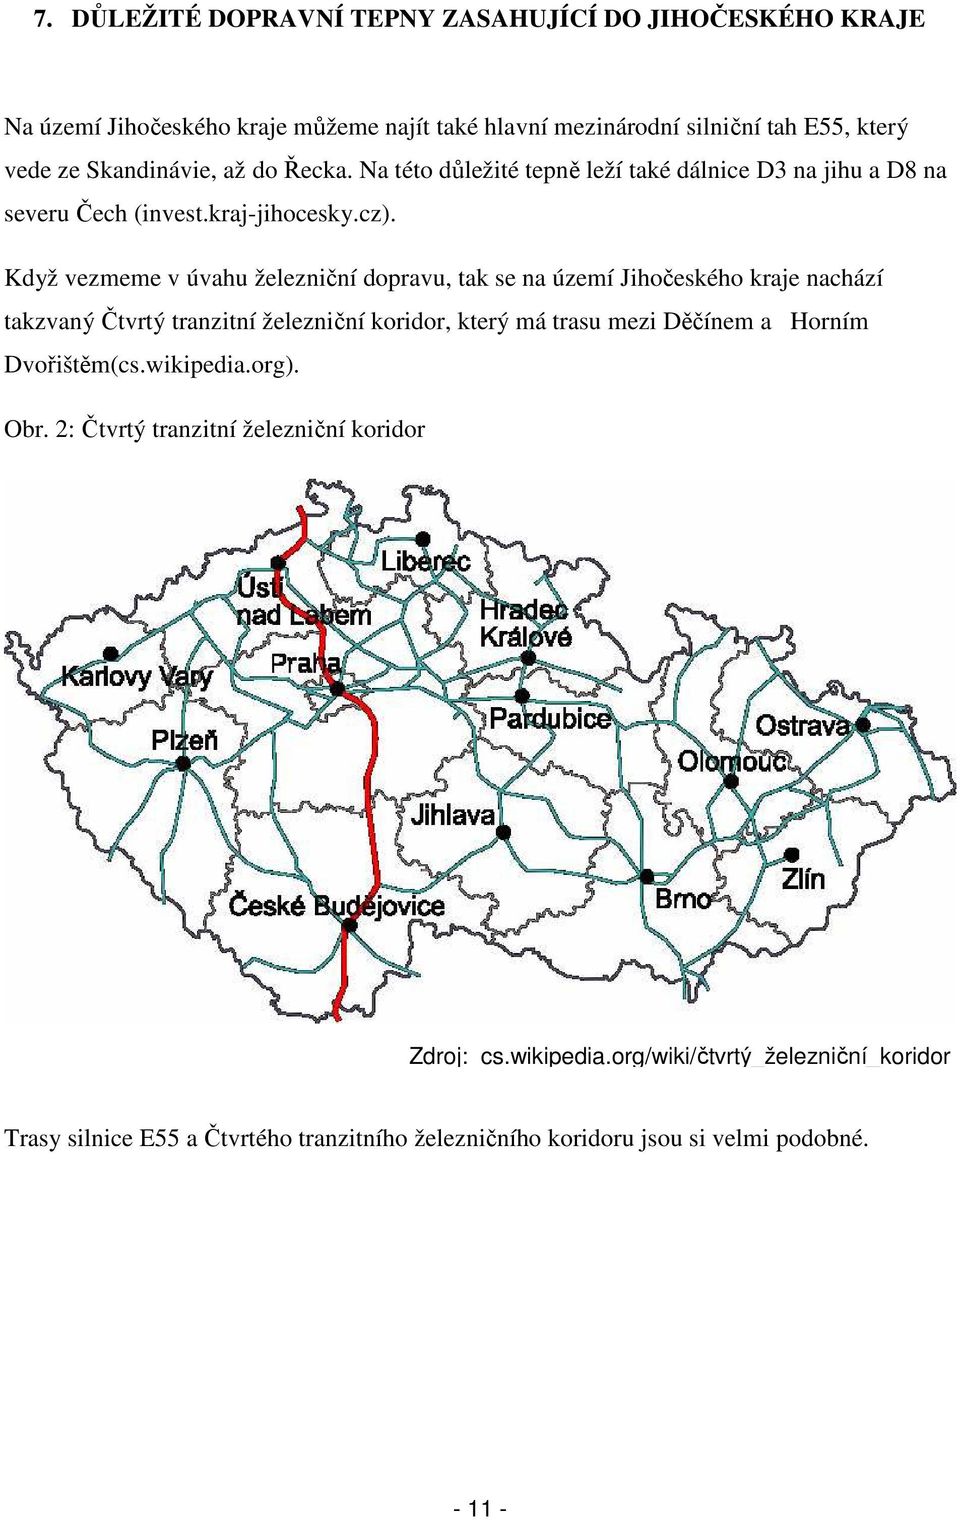 Když vezmeme v úvahu železniční dopravu, tak se na území Jihočeského kraje nachází takzvaný Čtvrtý tranzitní železniční koridor, který má trasu mezi Děčínem a Horním